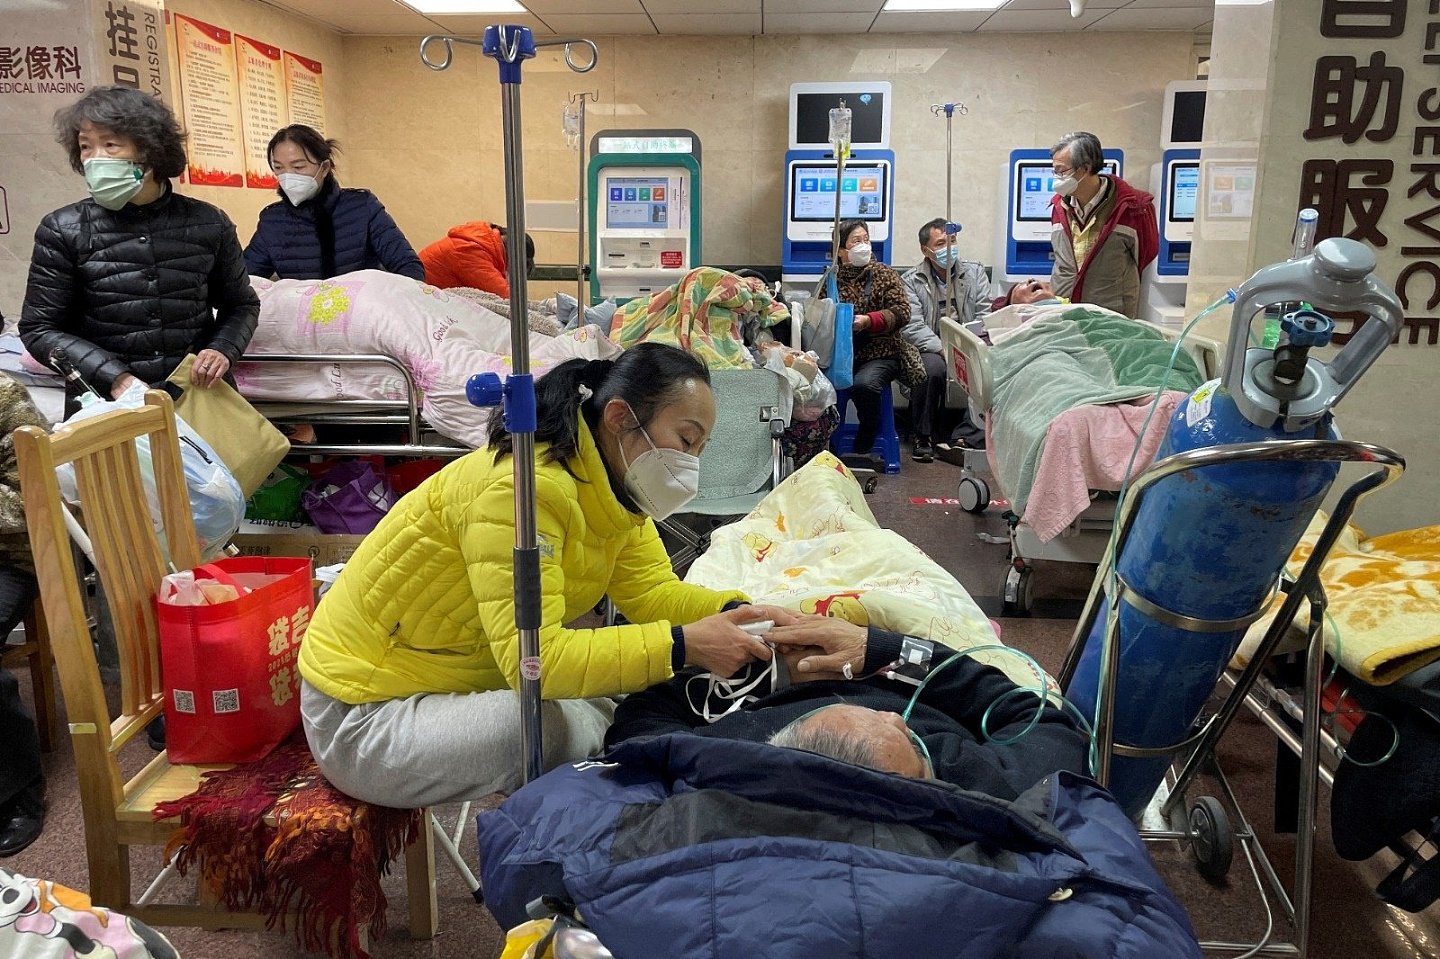 中国去年12月放弃世界上最严格的“清零”防控政策后，疫情快速蔓延，民众面临买药难、就医难困境。1月4日在上海一家医院，患者躺在急诊室走廊的床上和担架上。（图取自路透社档案照）